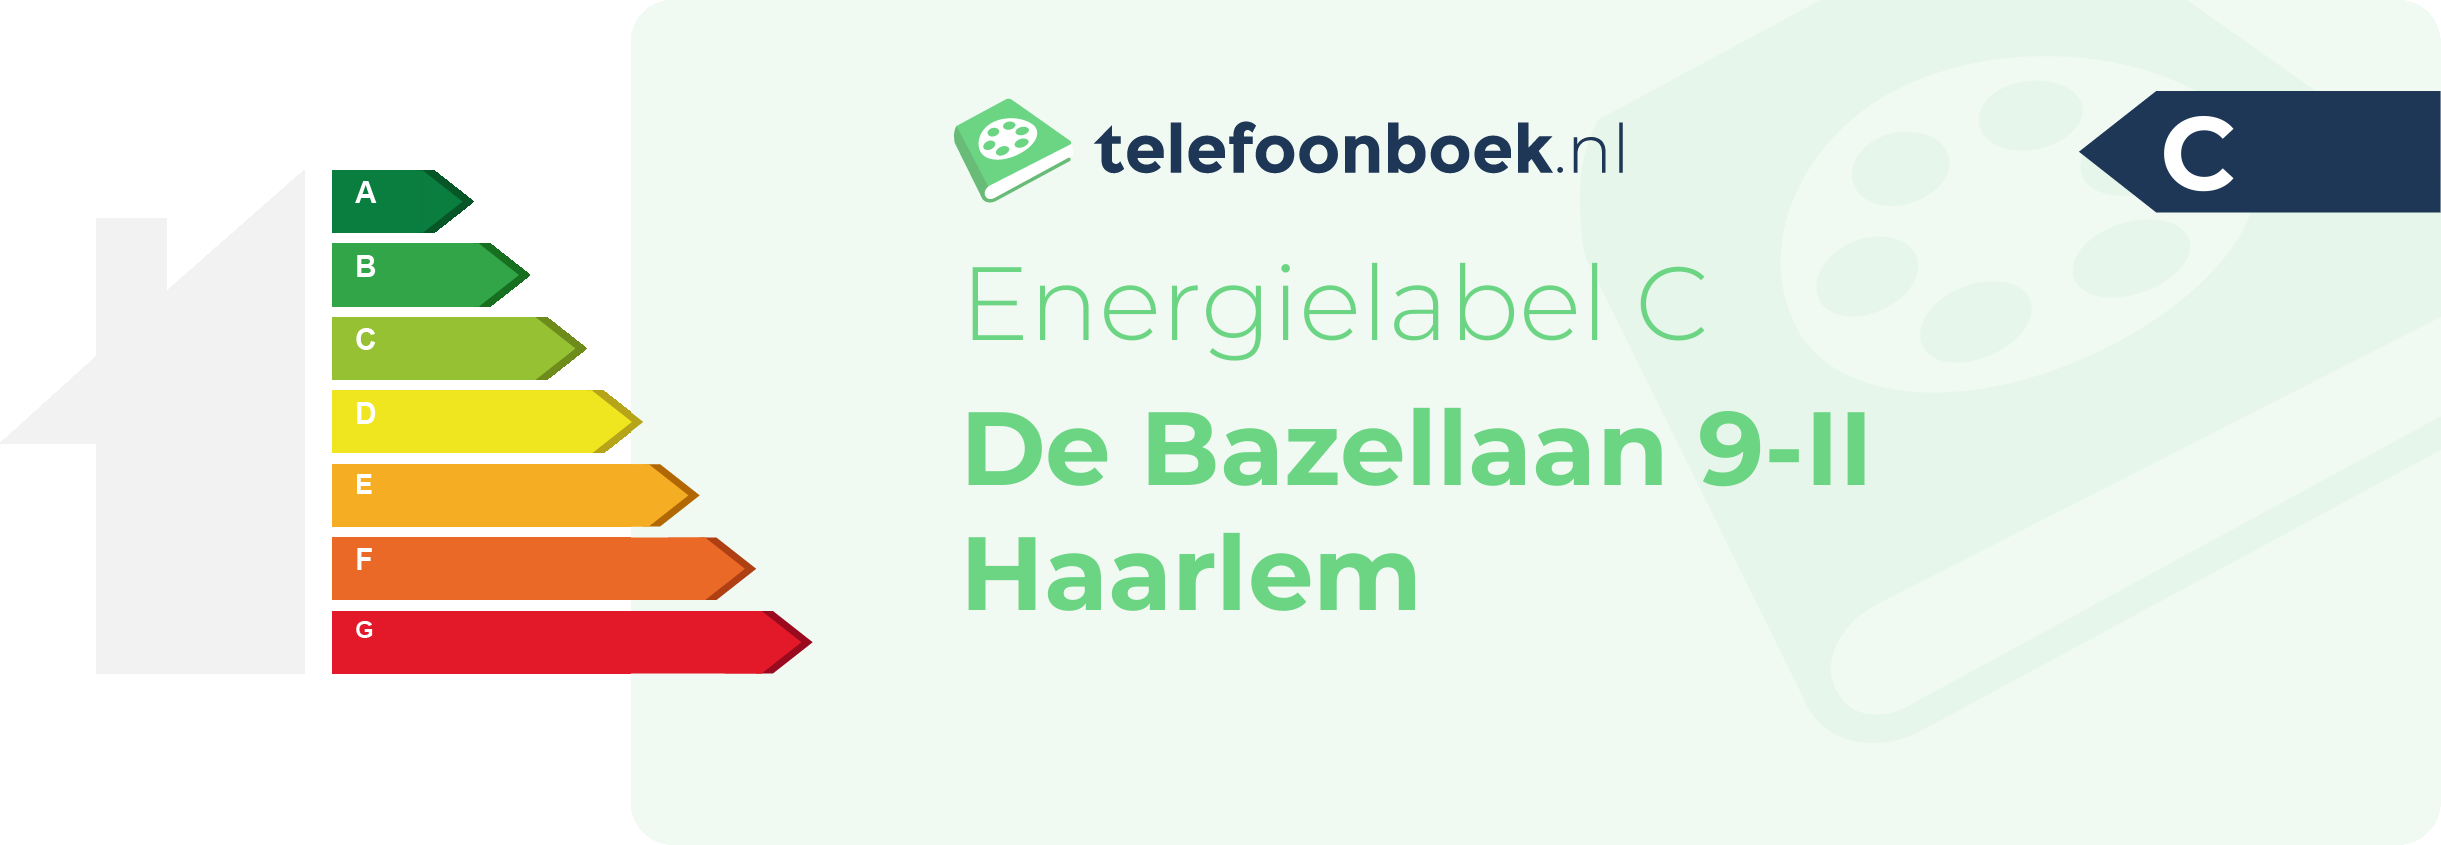 Energielabel De Bazellaan 9-II Haarlem